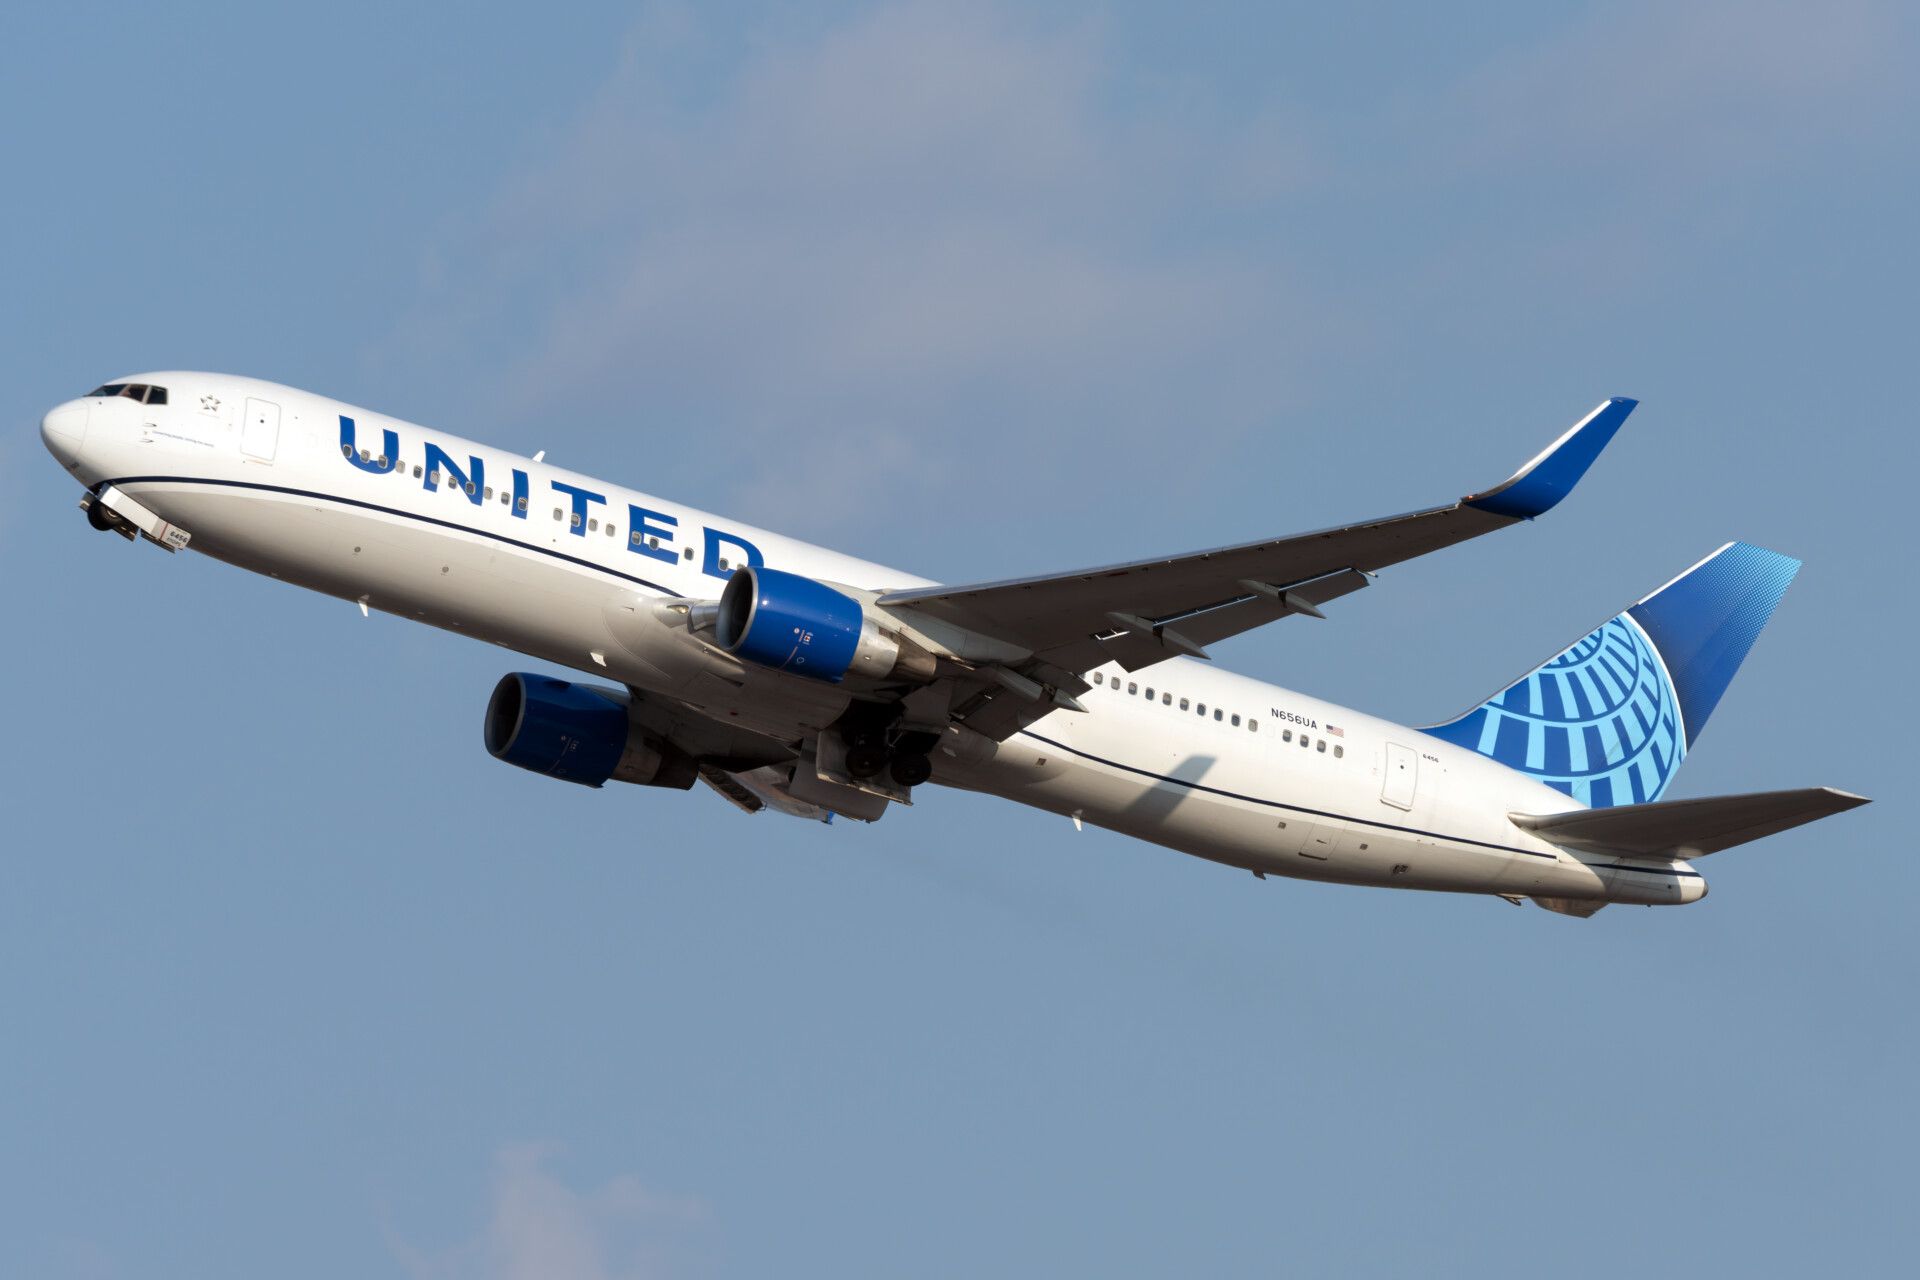 United 767-300ER take off